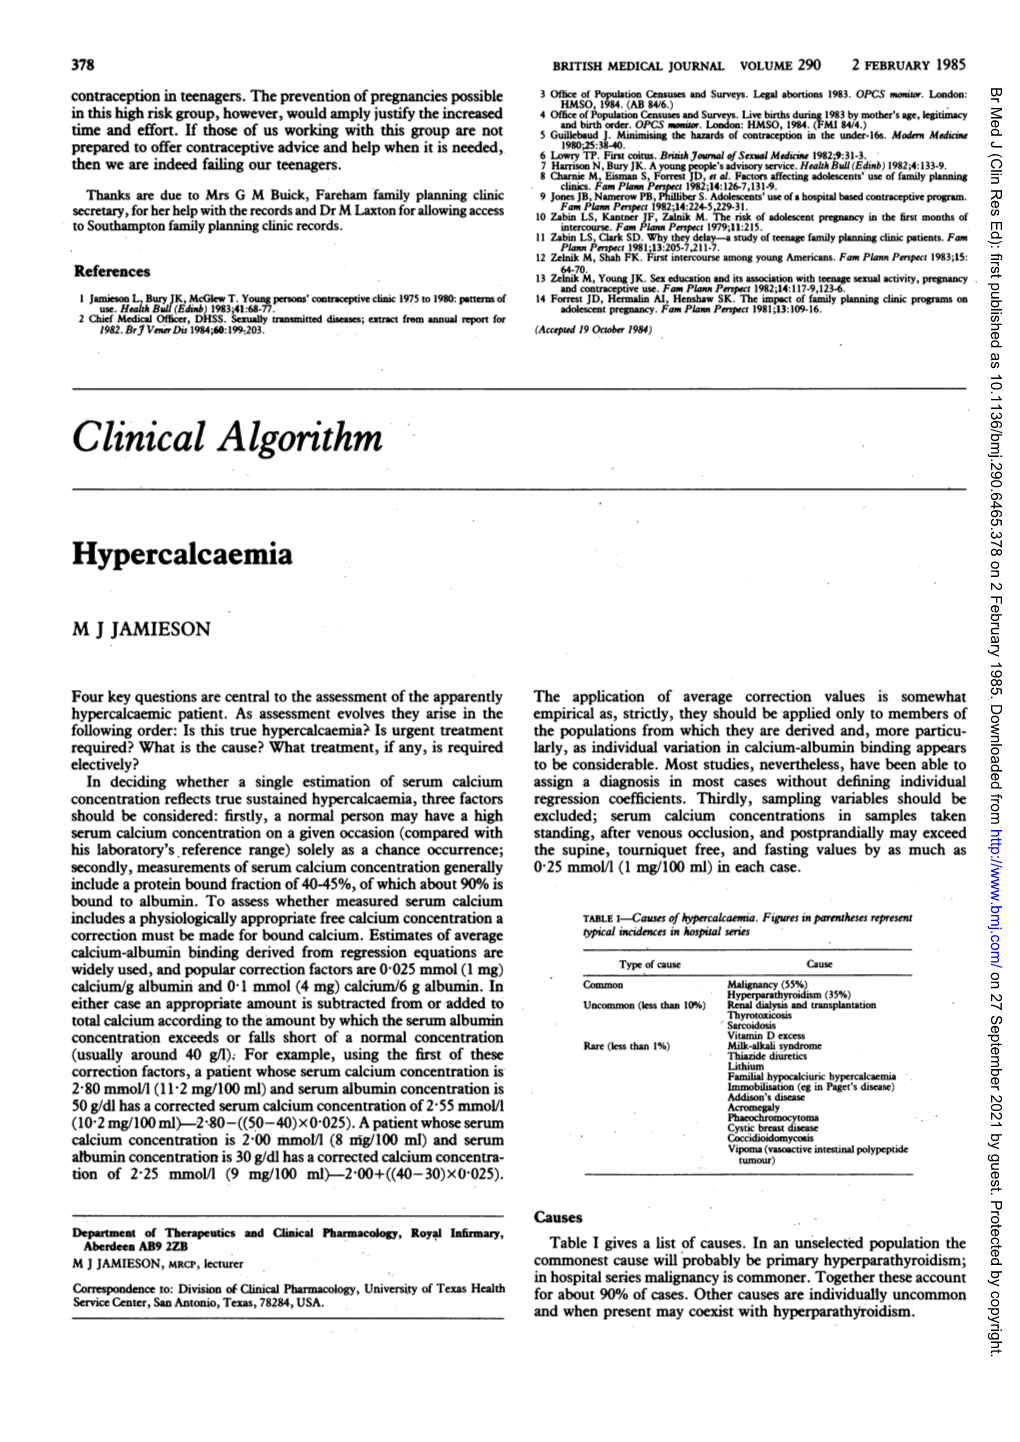 Clinical Algorithm